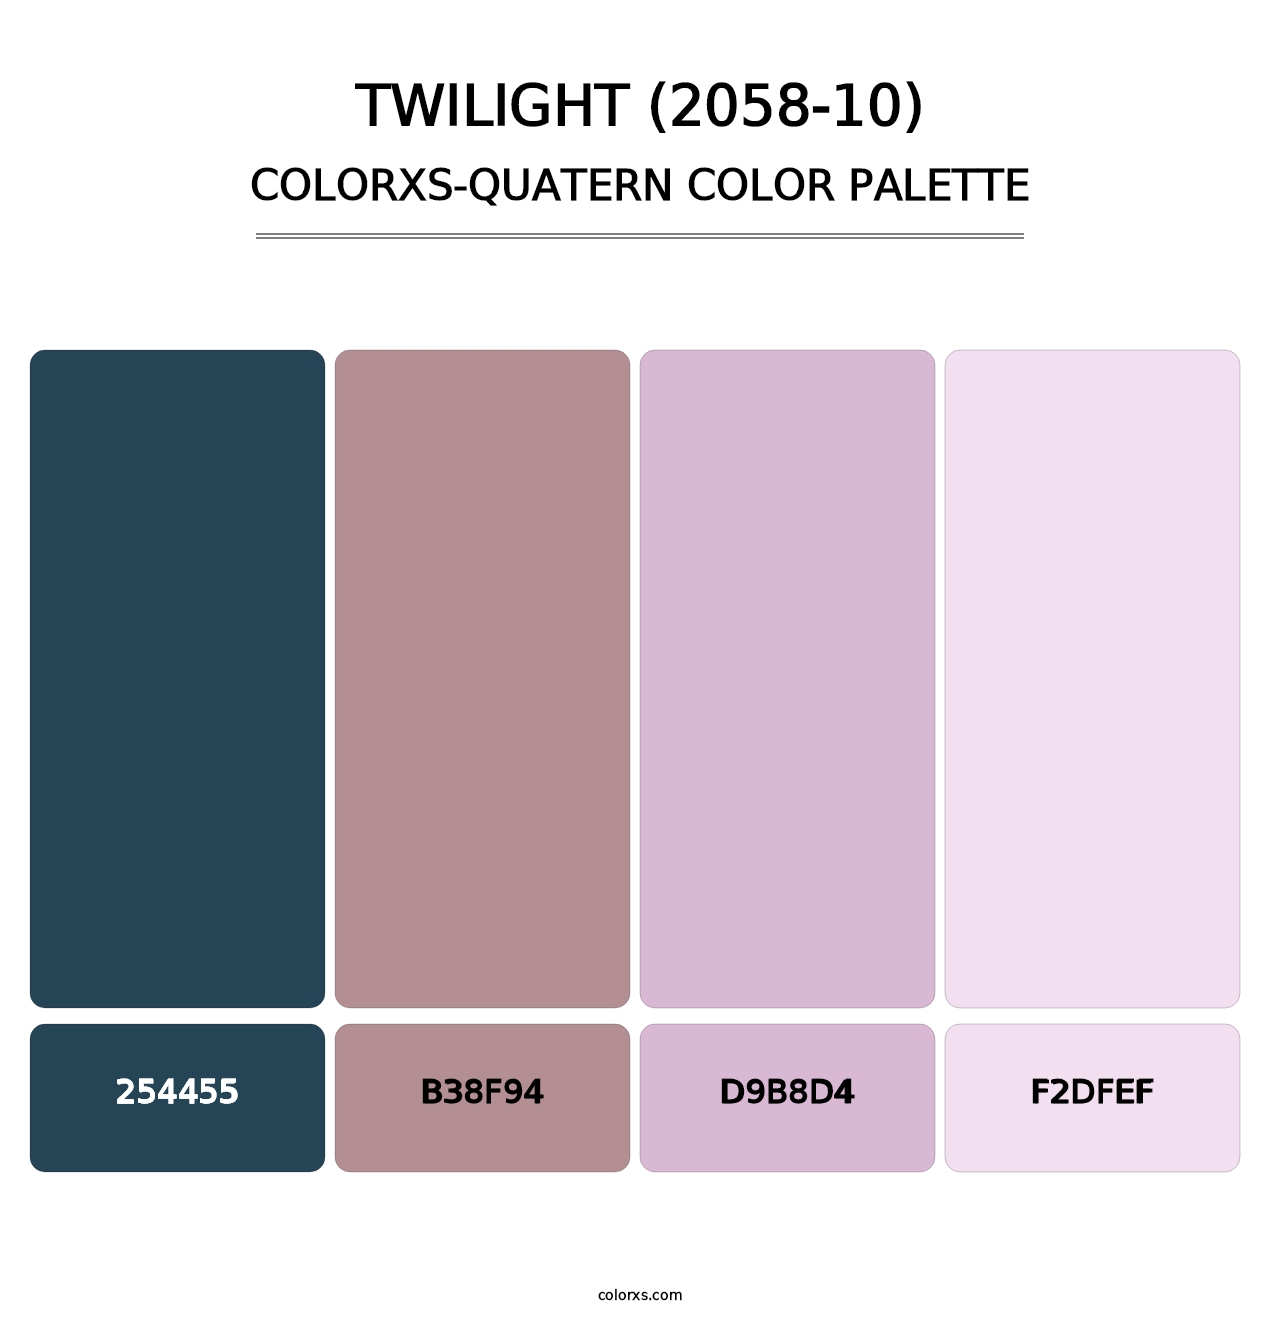 Twilight (2058-10) - Colorxs Quatern Palette